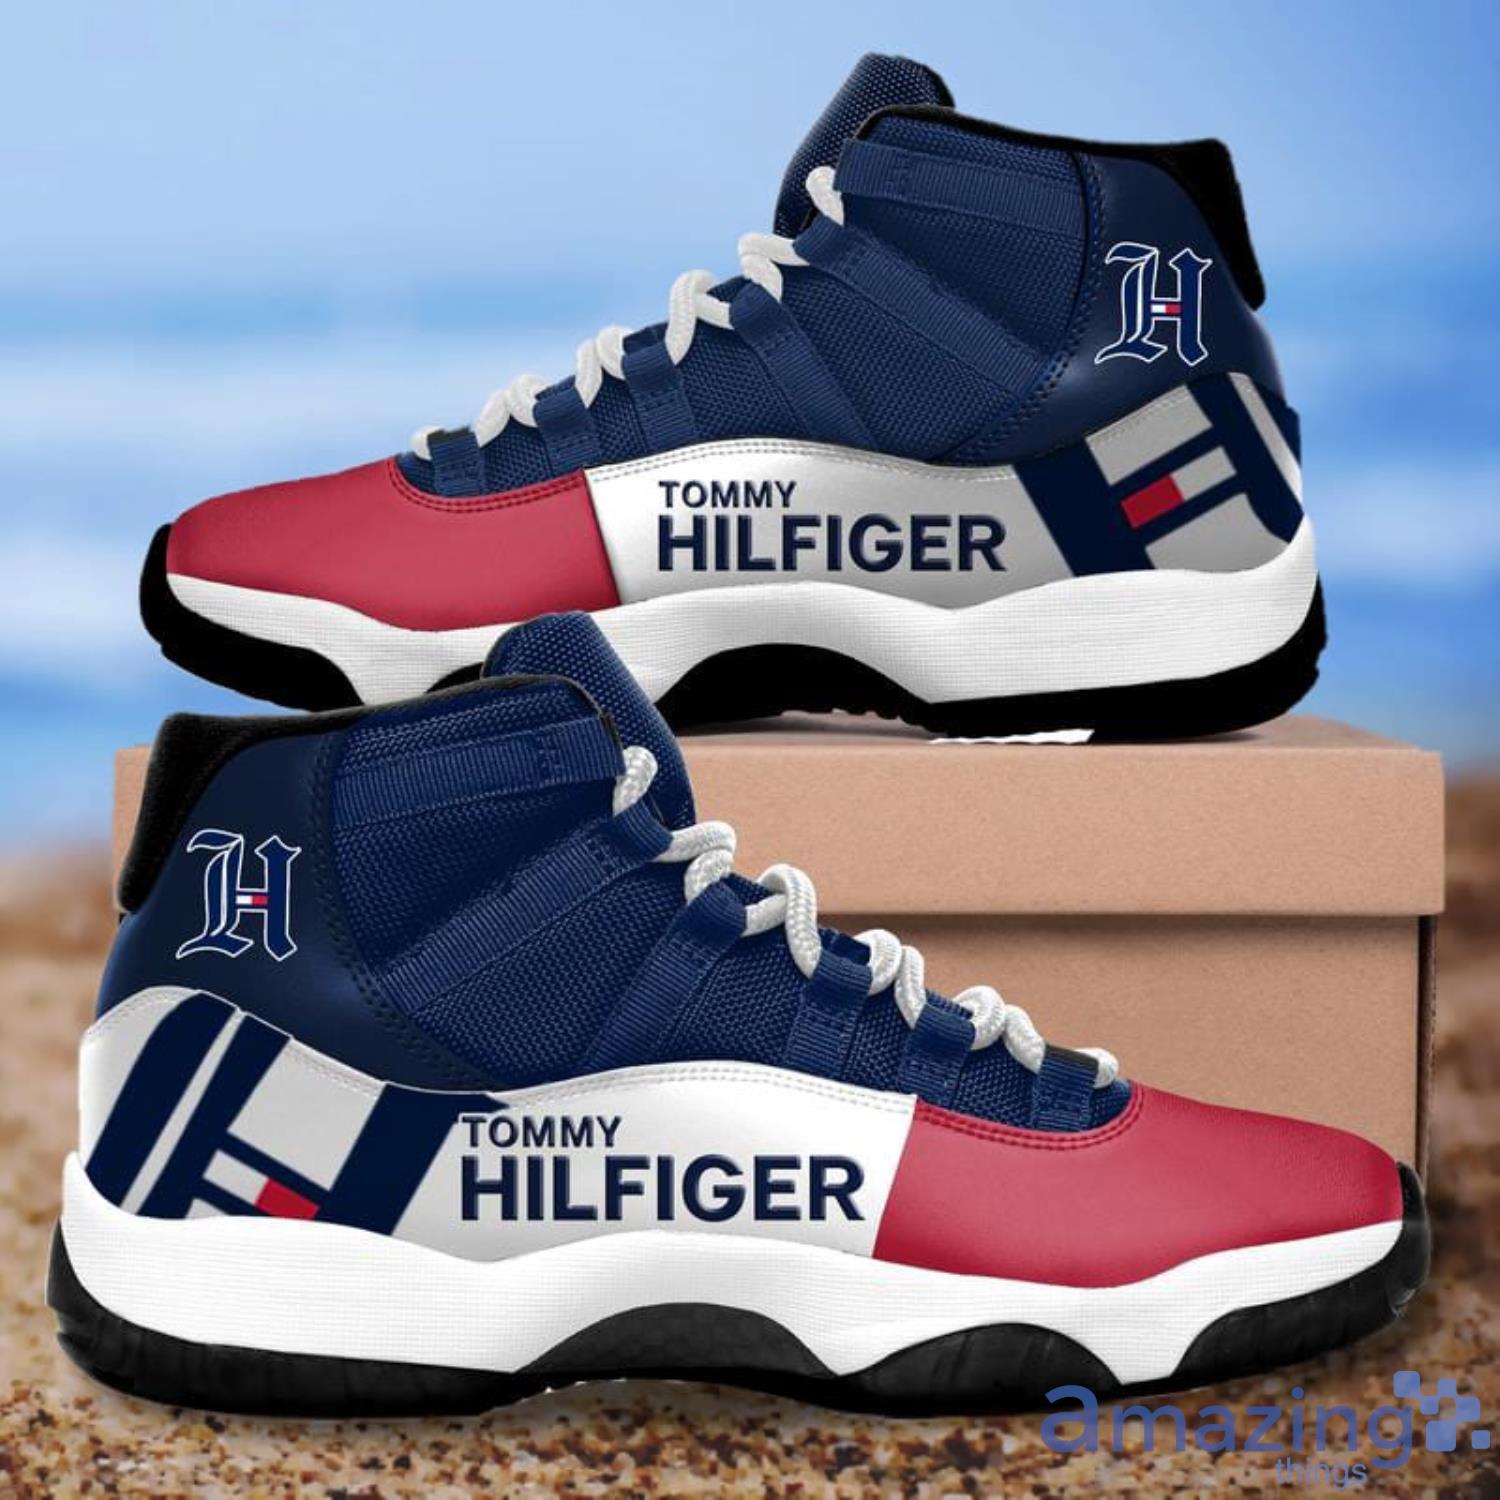 Tommy Hilfiger Air Jordan 11 Shoes Sport Shoes For Fans